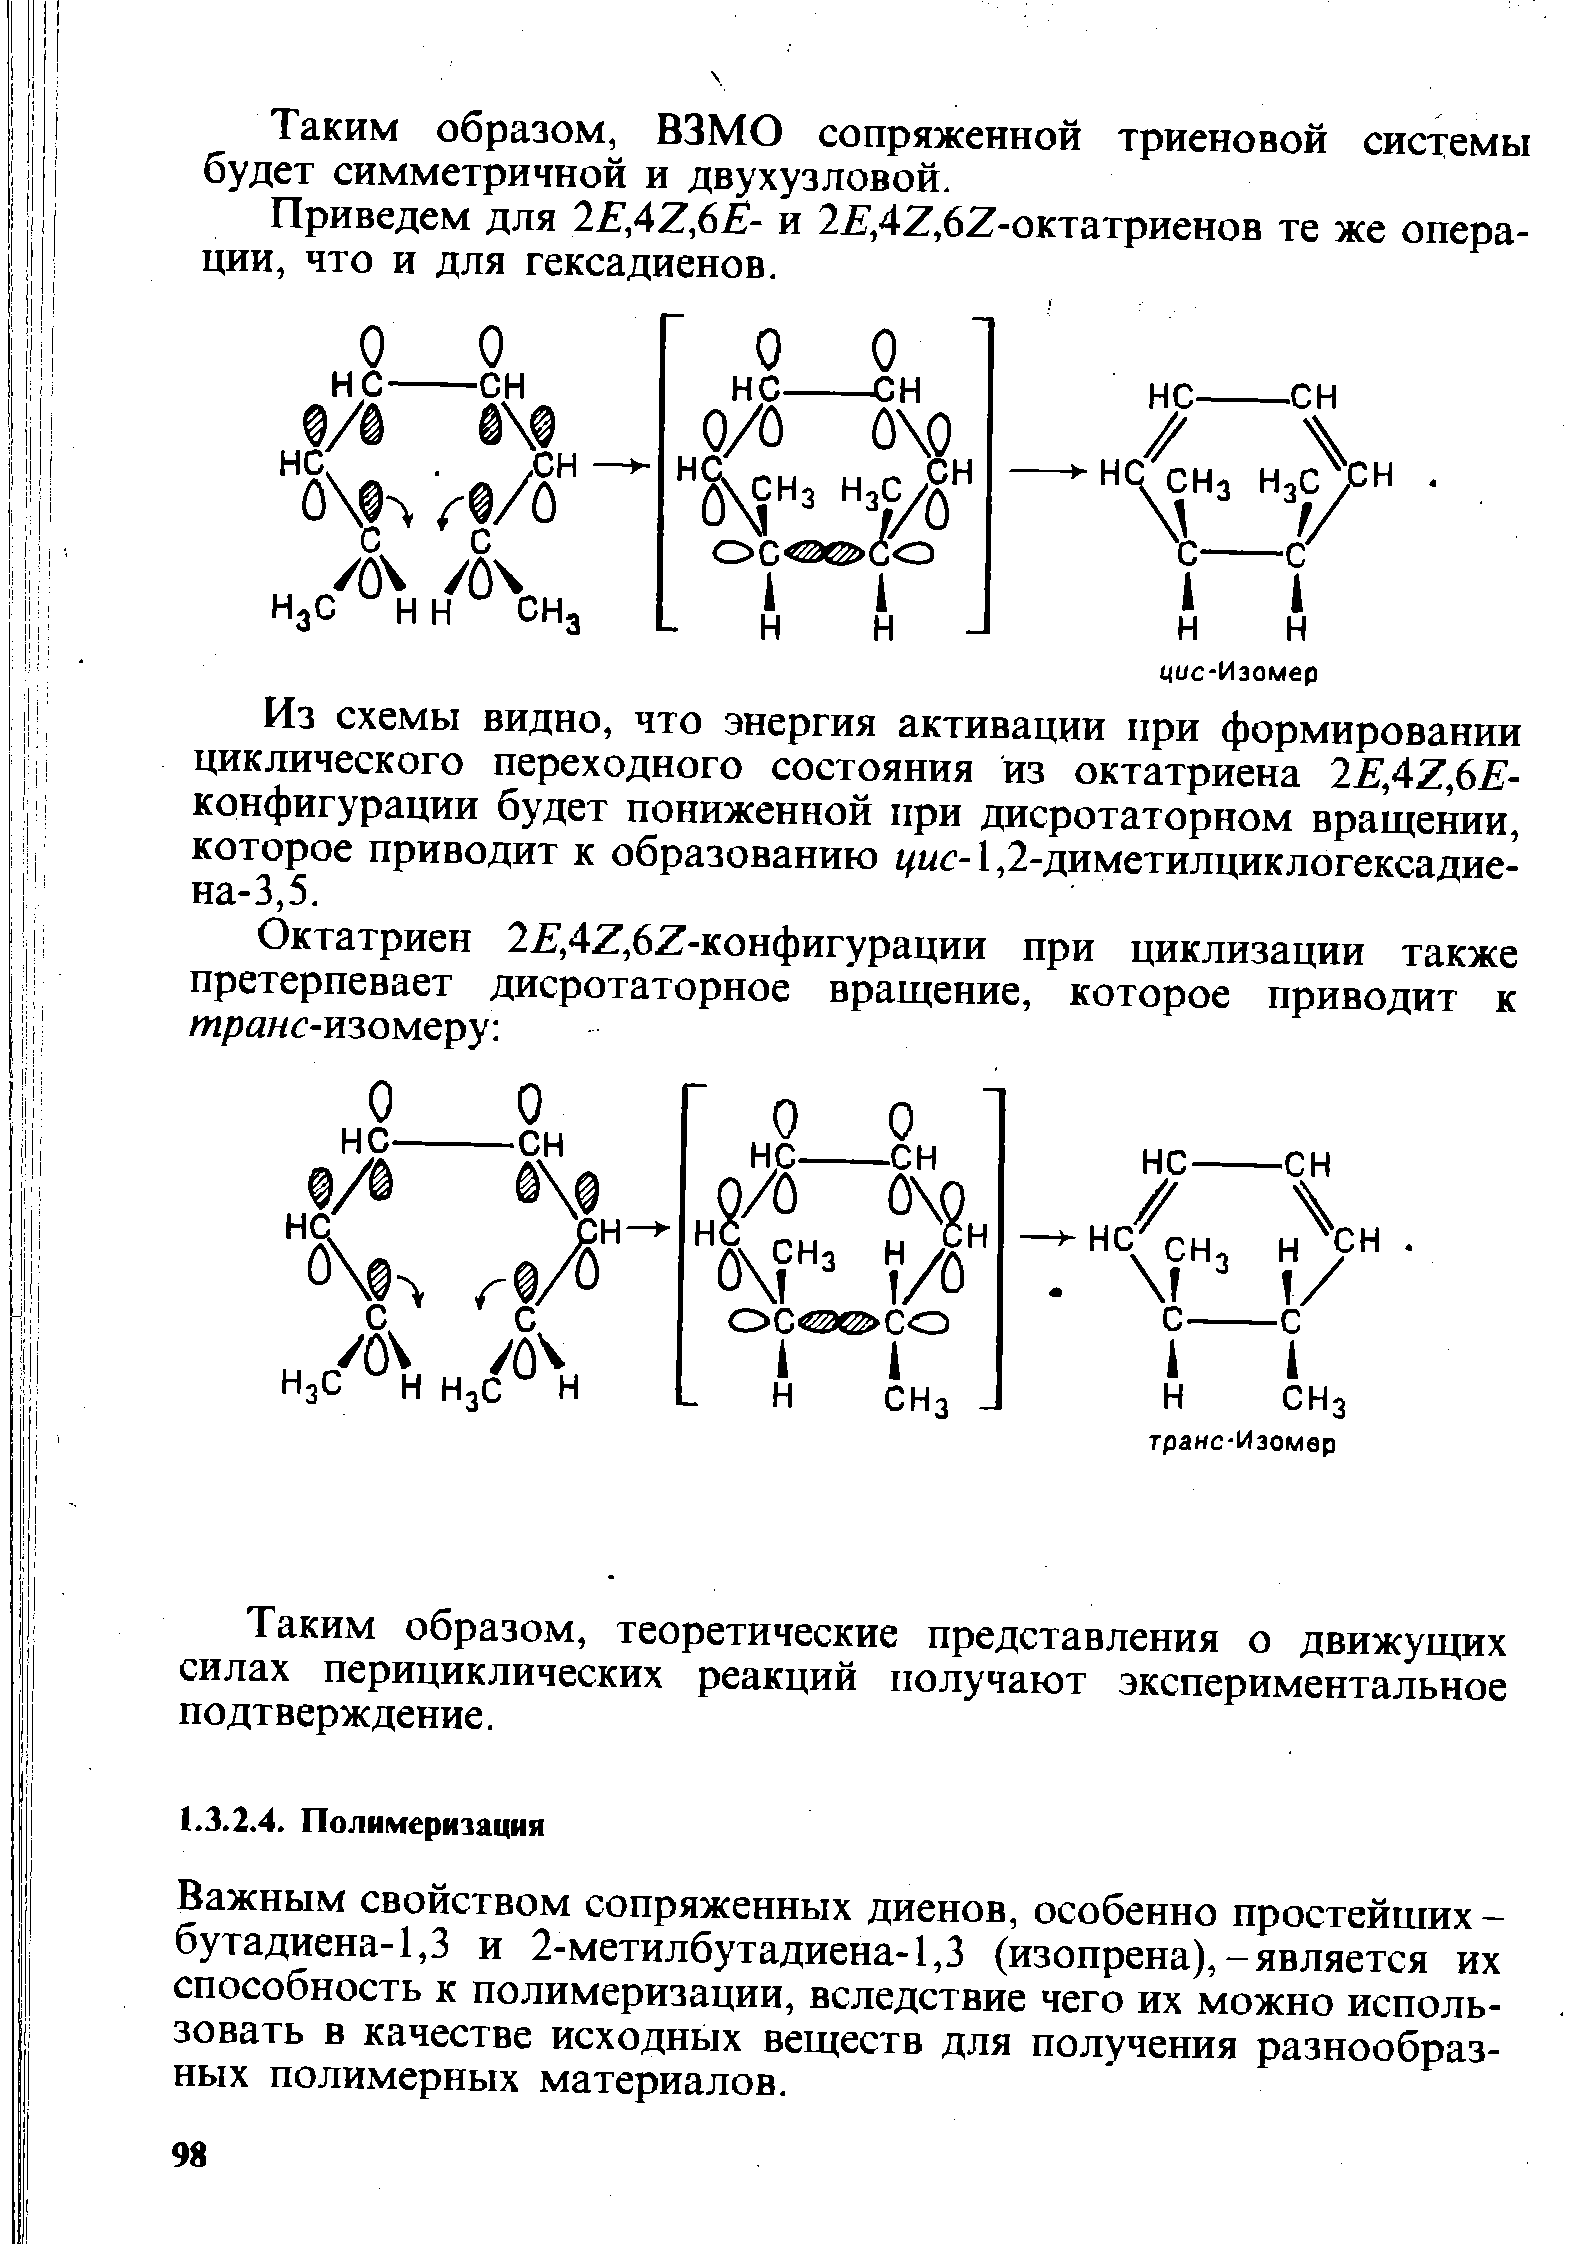 Важным свойством сопряженных диенов, особенно простейших -бутадиена-1,3 и 2-метилбутадиена-1,3 (изопрена),-является их способность к полимеризации, вследствие чего их можно использовать в качестве исходных веществ для получения разнообразных полимерных материалов.